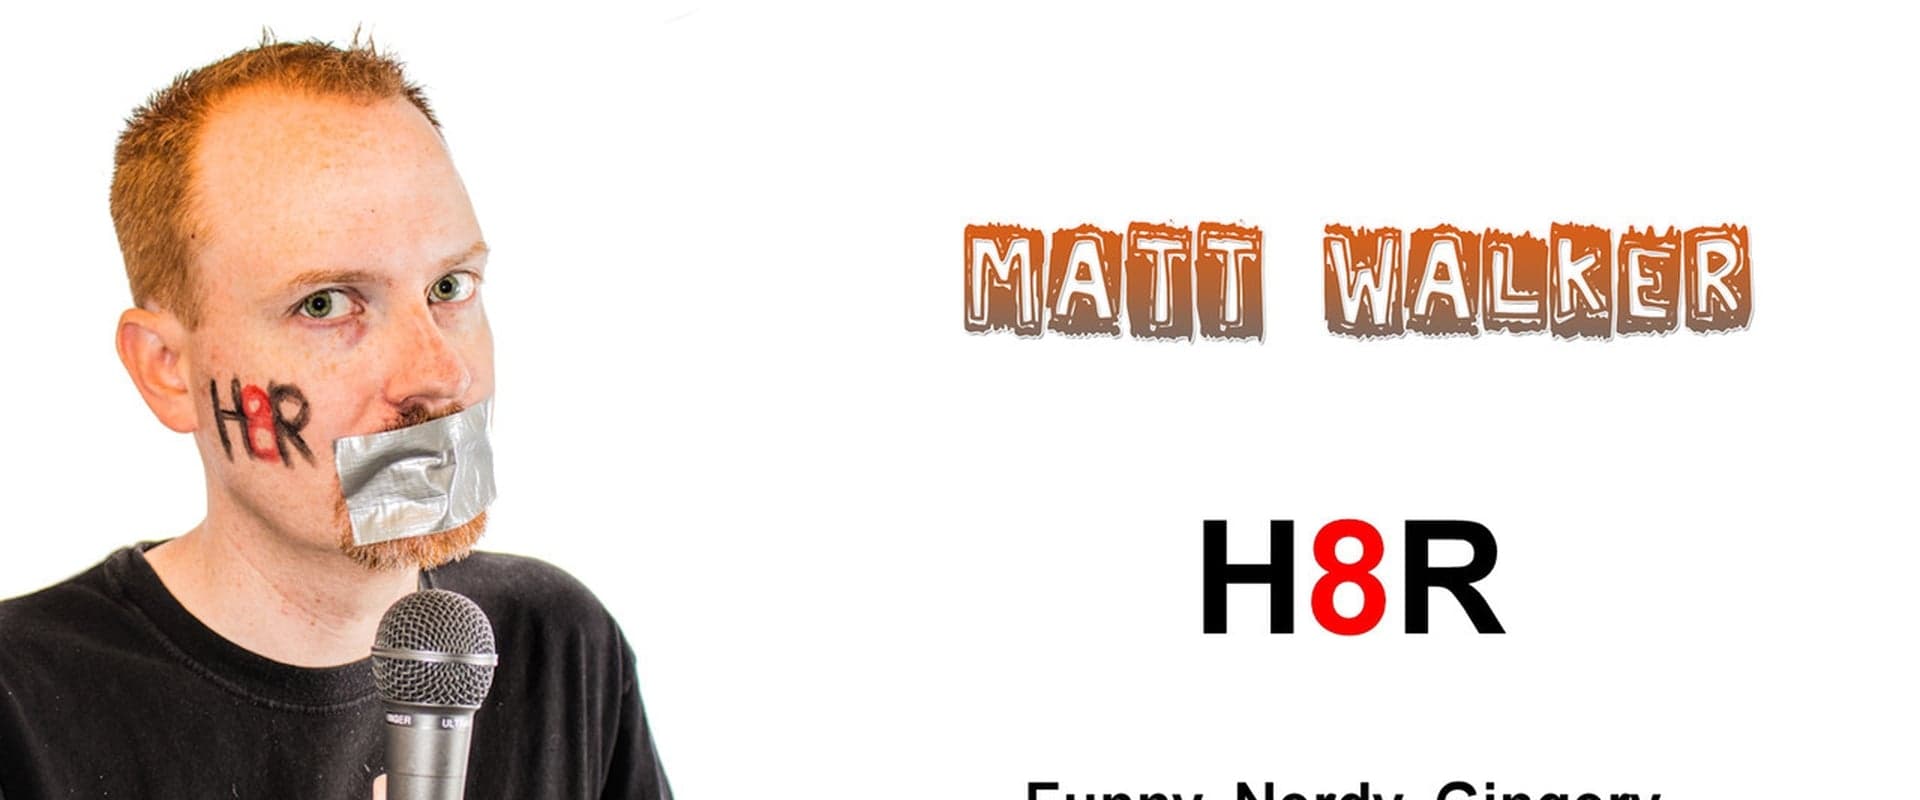 Matt Walker: H8R